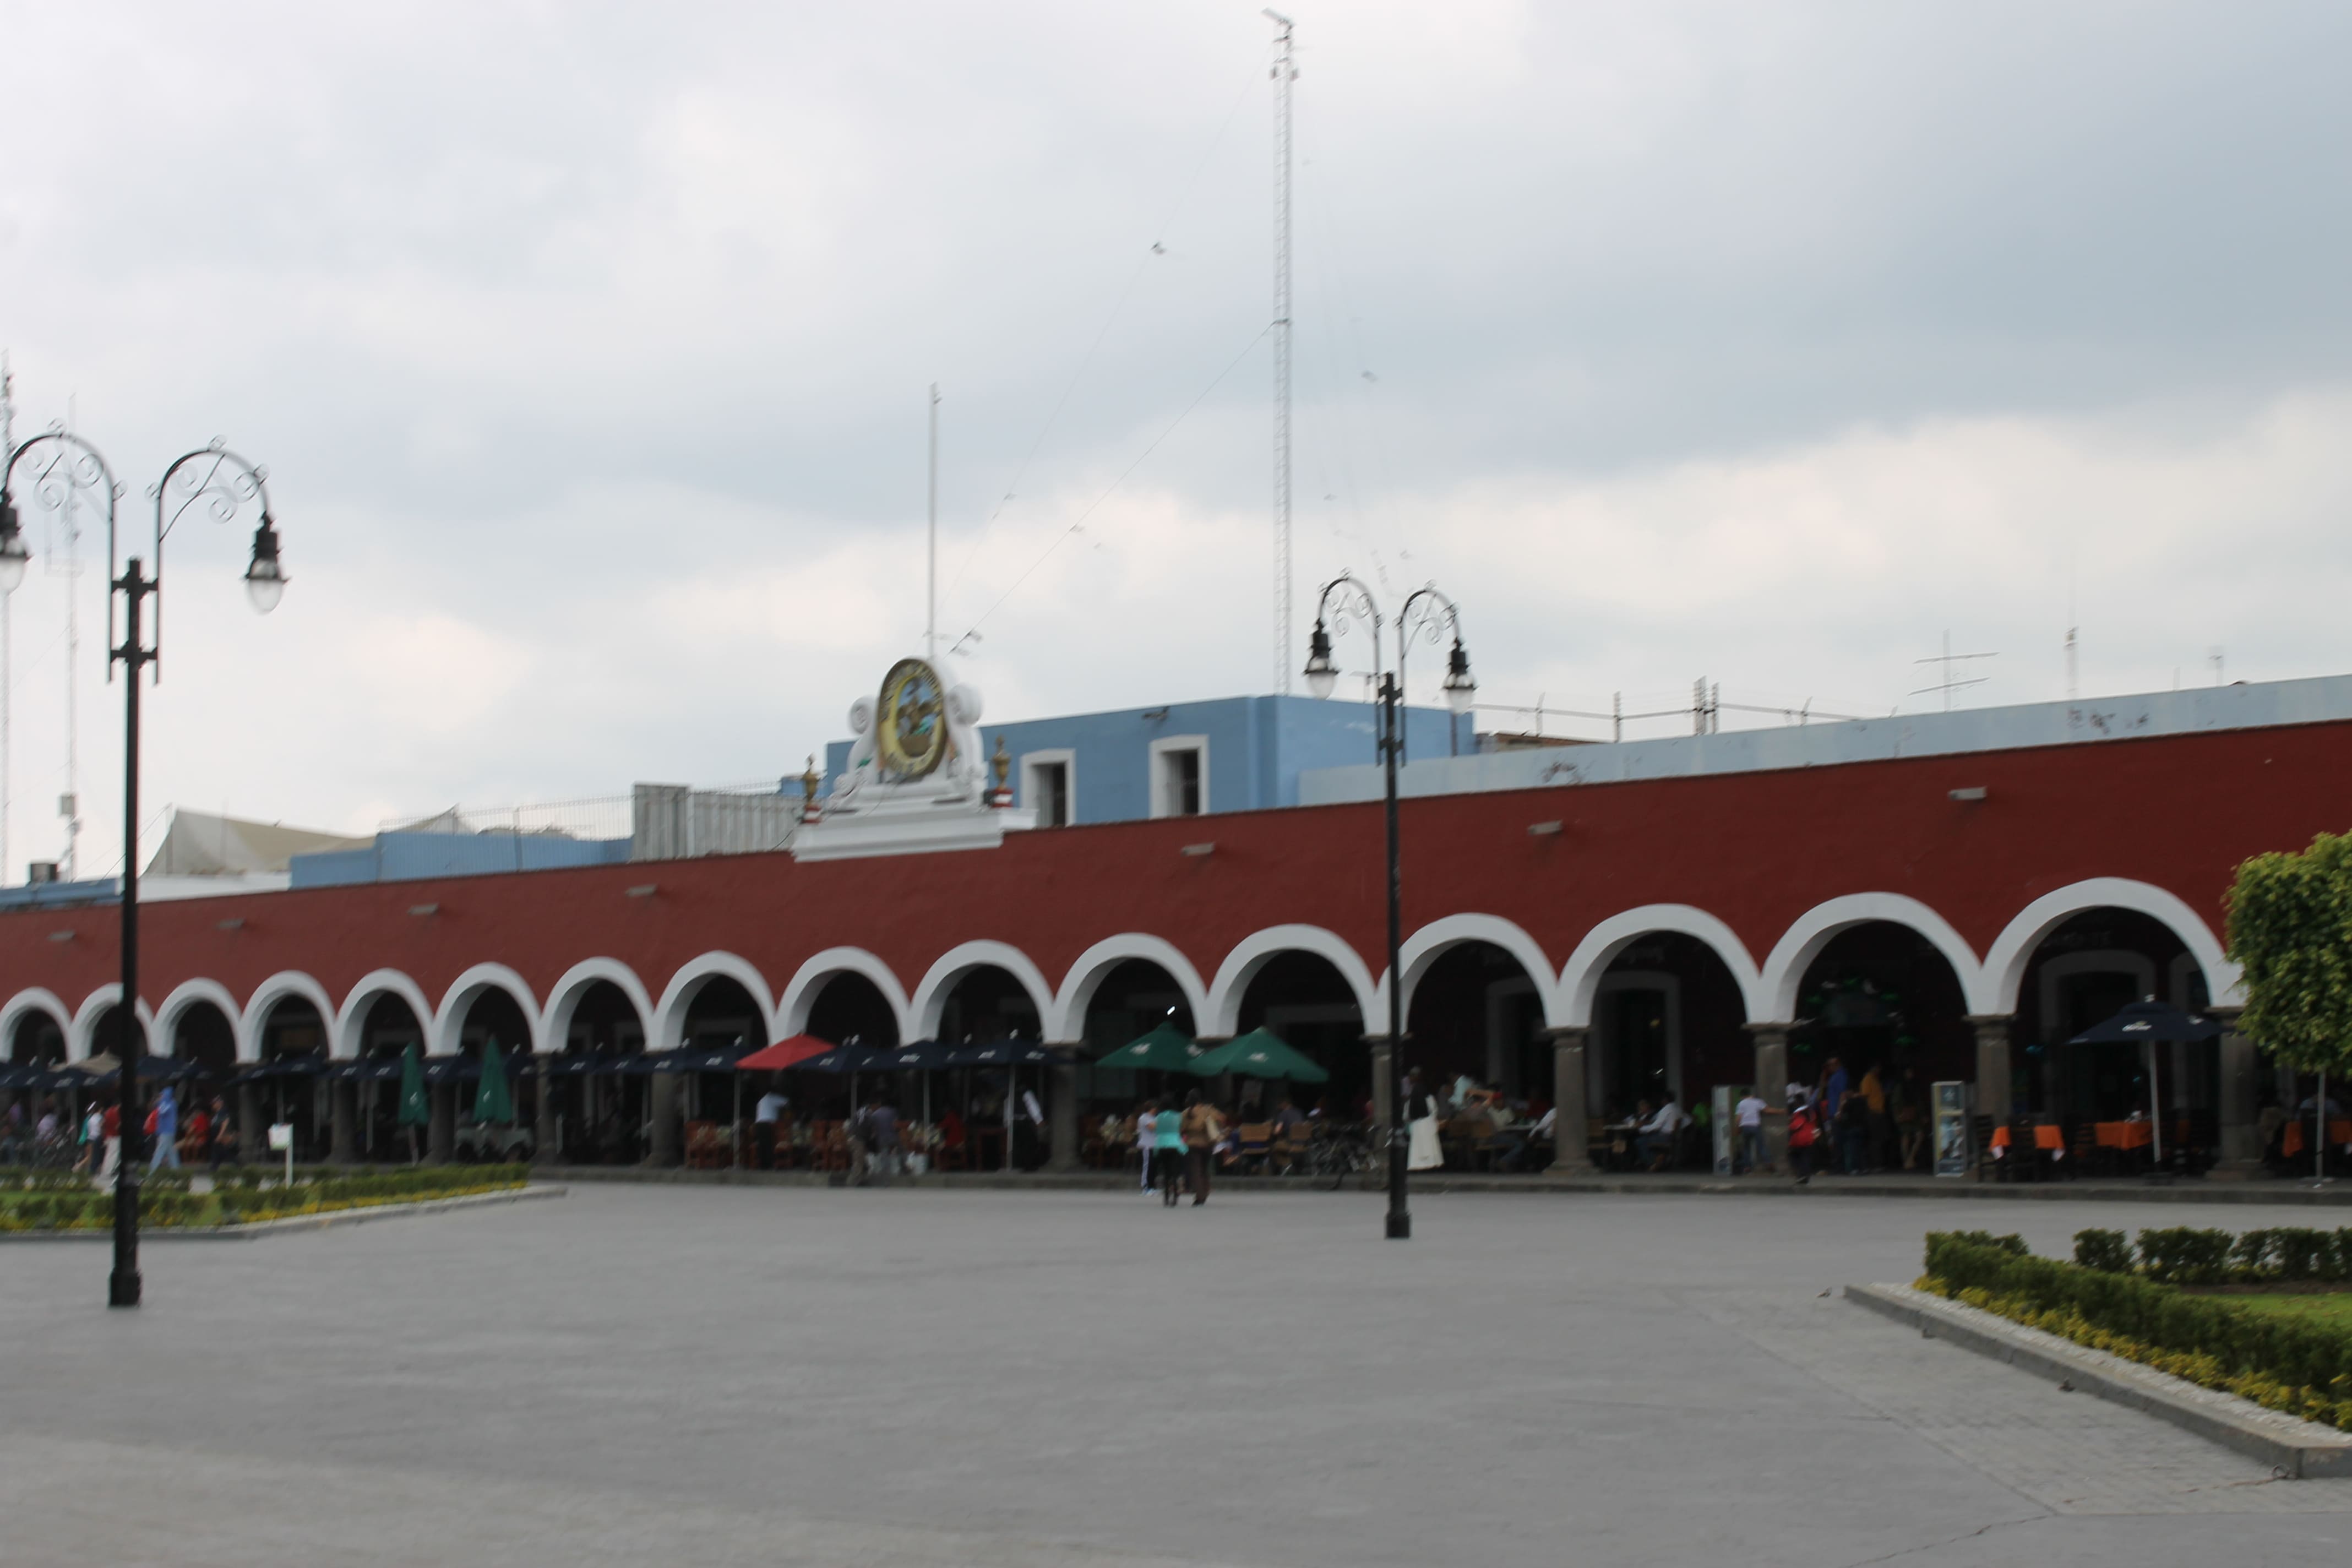 Fotografía de los portales en el centro de San Pedro Cholula, uno de los puntos más turísticos del municipio